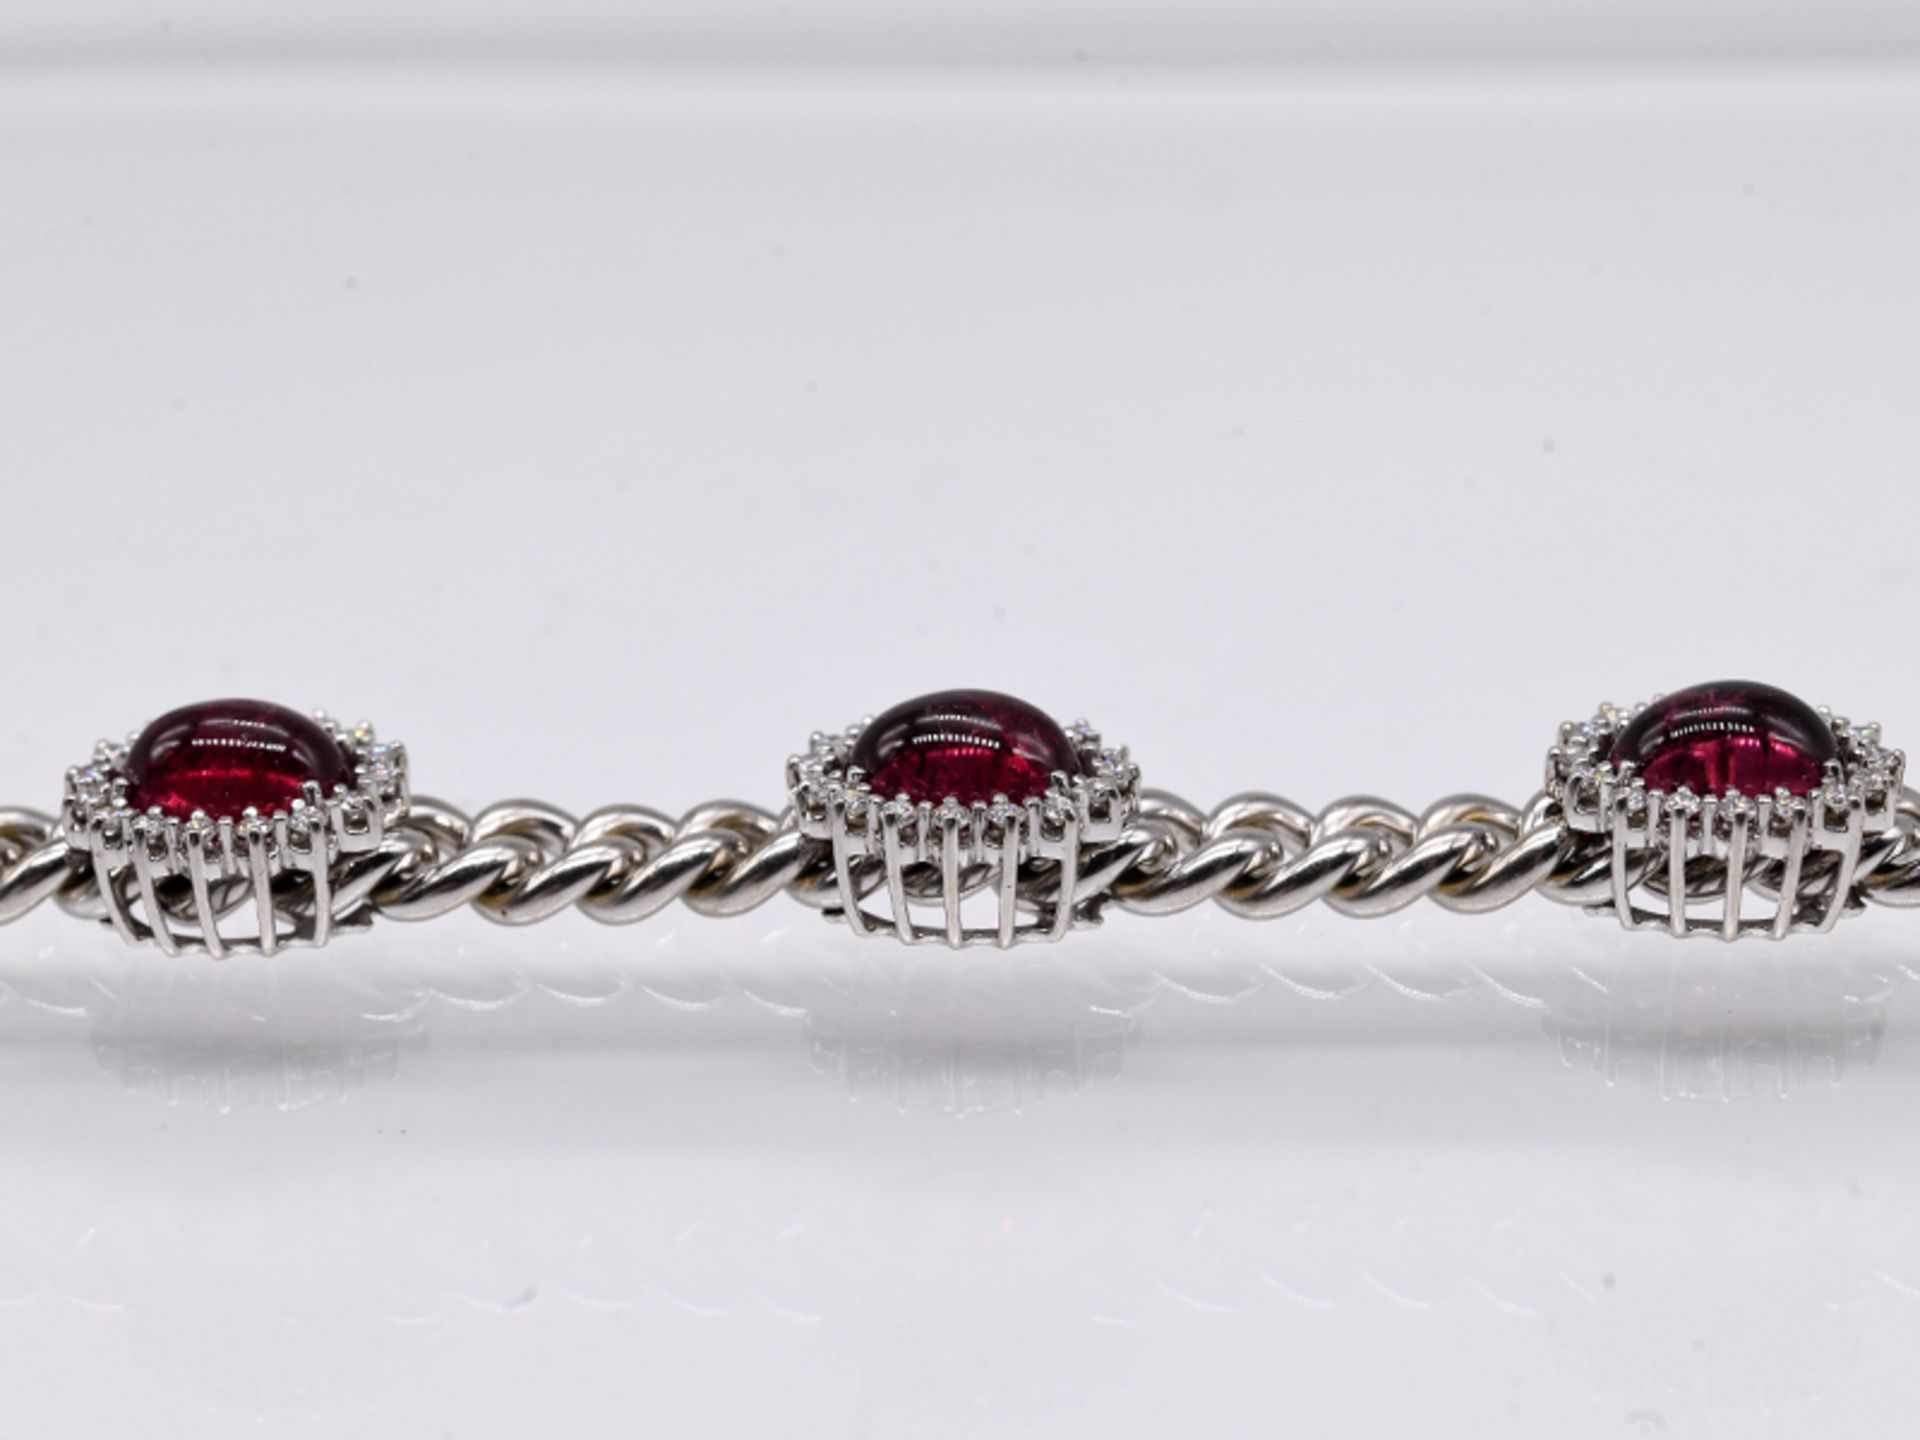 Massives Armband mit 5 roséfarbenen Turmalin-Cabochons, zus. ca. 10 ct und 79 Brillanten, zus. ca. - Image 3 of 3